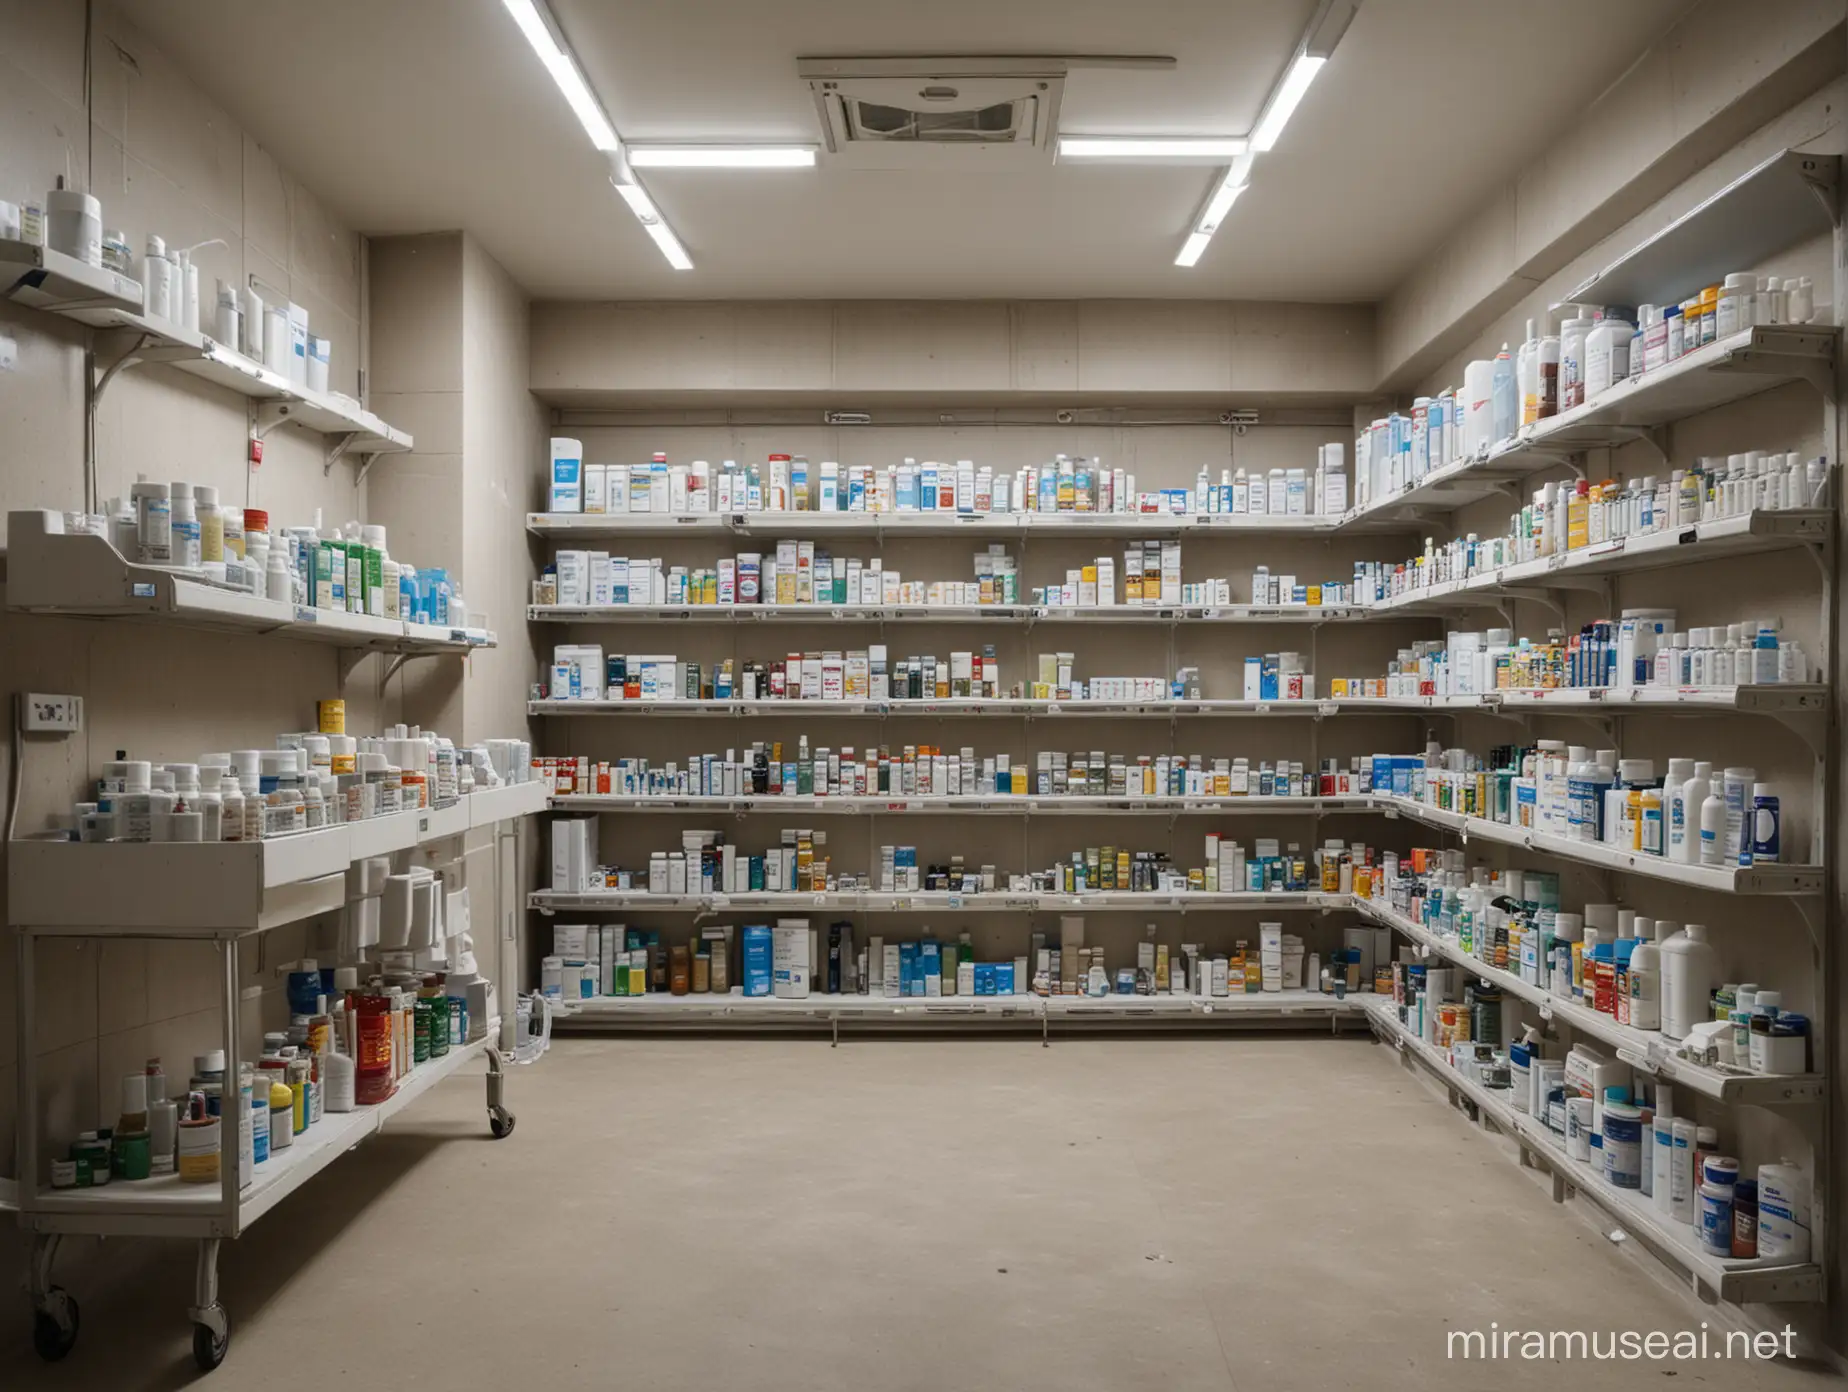 Элитная фармацевтическая аптека с обилием лекарств, таблеток и лечебных спреев, расположенная в бункере без окон. Много деталей. Имеются больничные койки